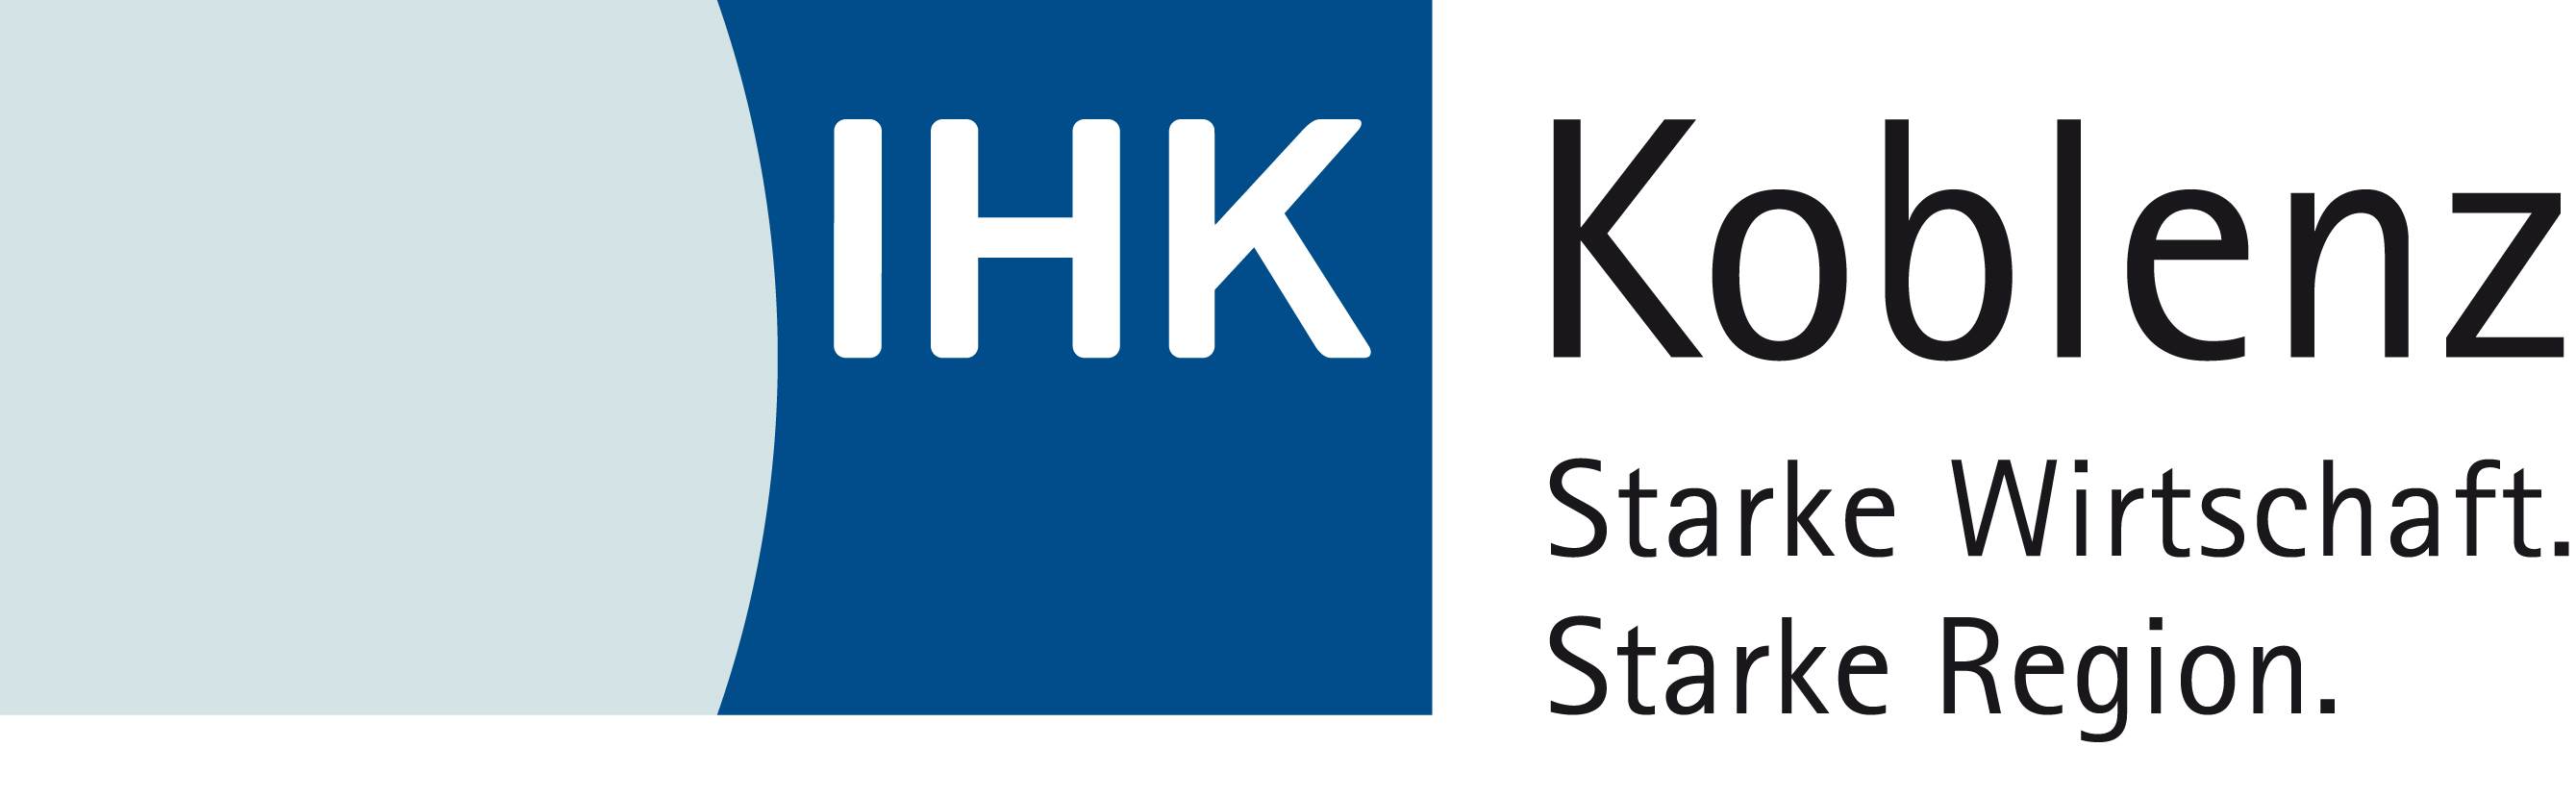 Logo: IHK Koblenz